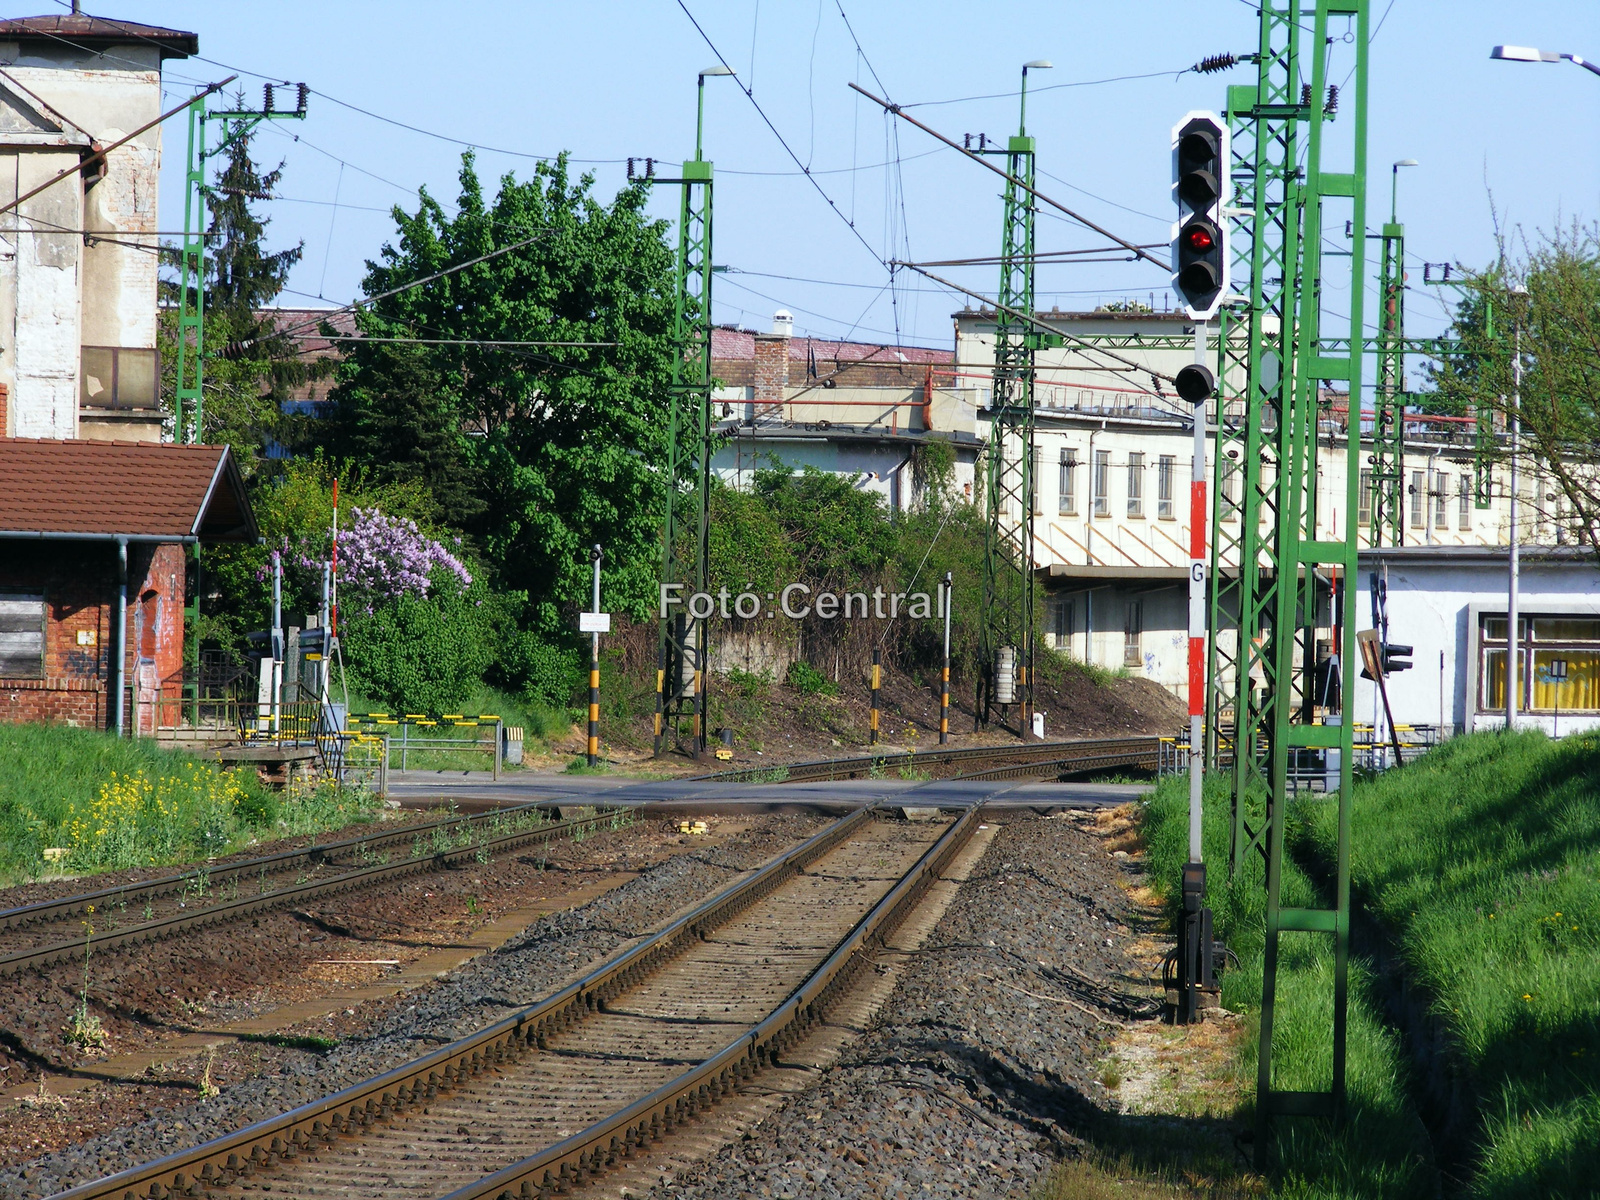 Sopron állomás,Sopron-Déli pu. felőli bejárati jelzője.Bal oldal